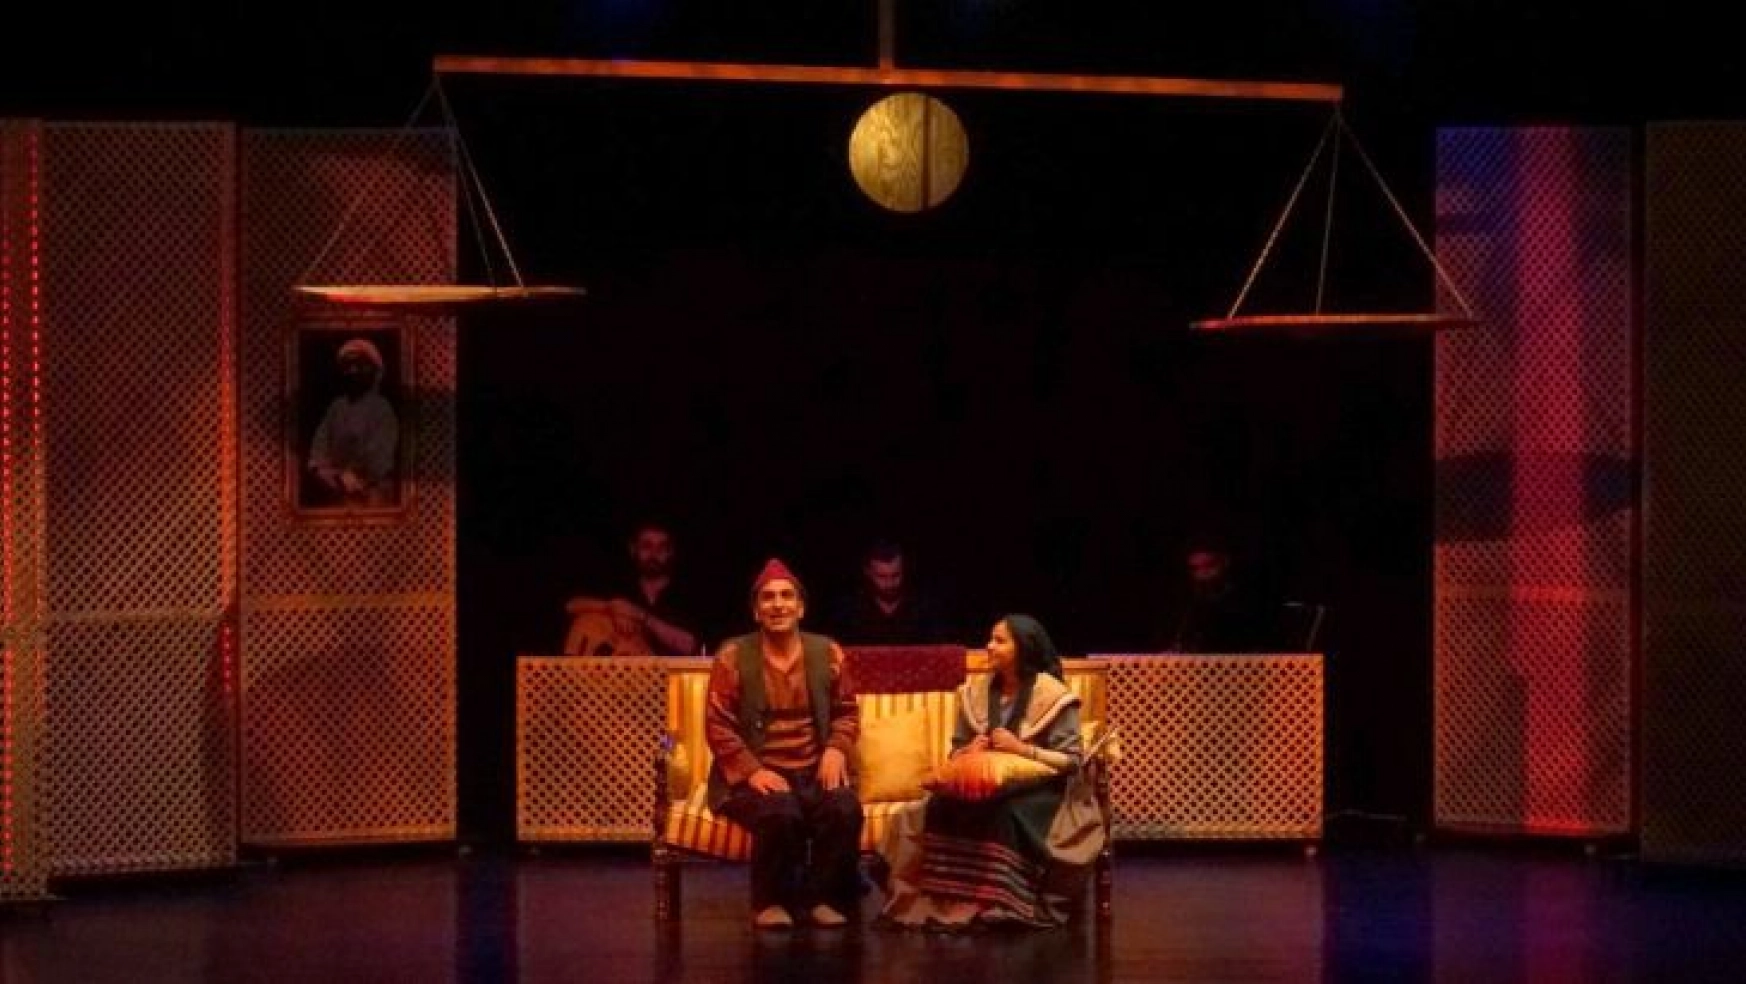 EBB şehir tiyatrosu'nun oyunu 'Evhami' yoğun ilgi gördü